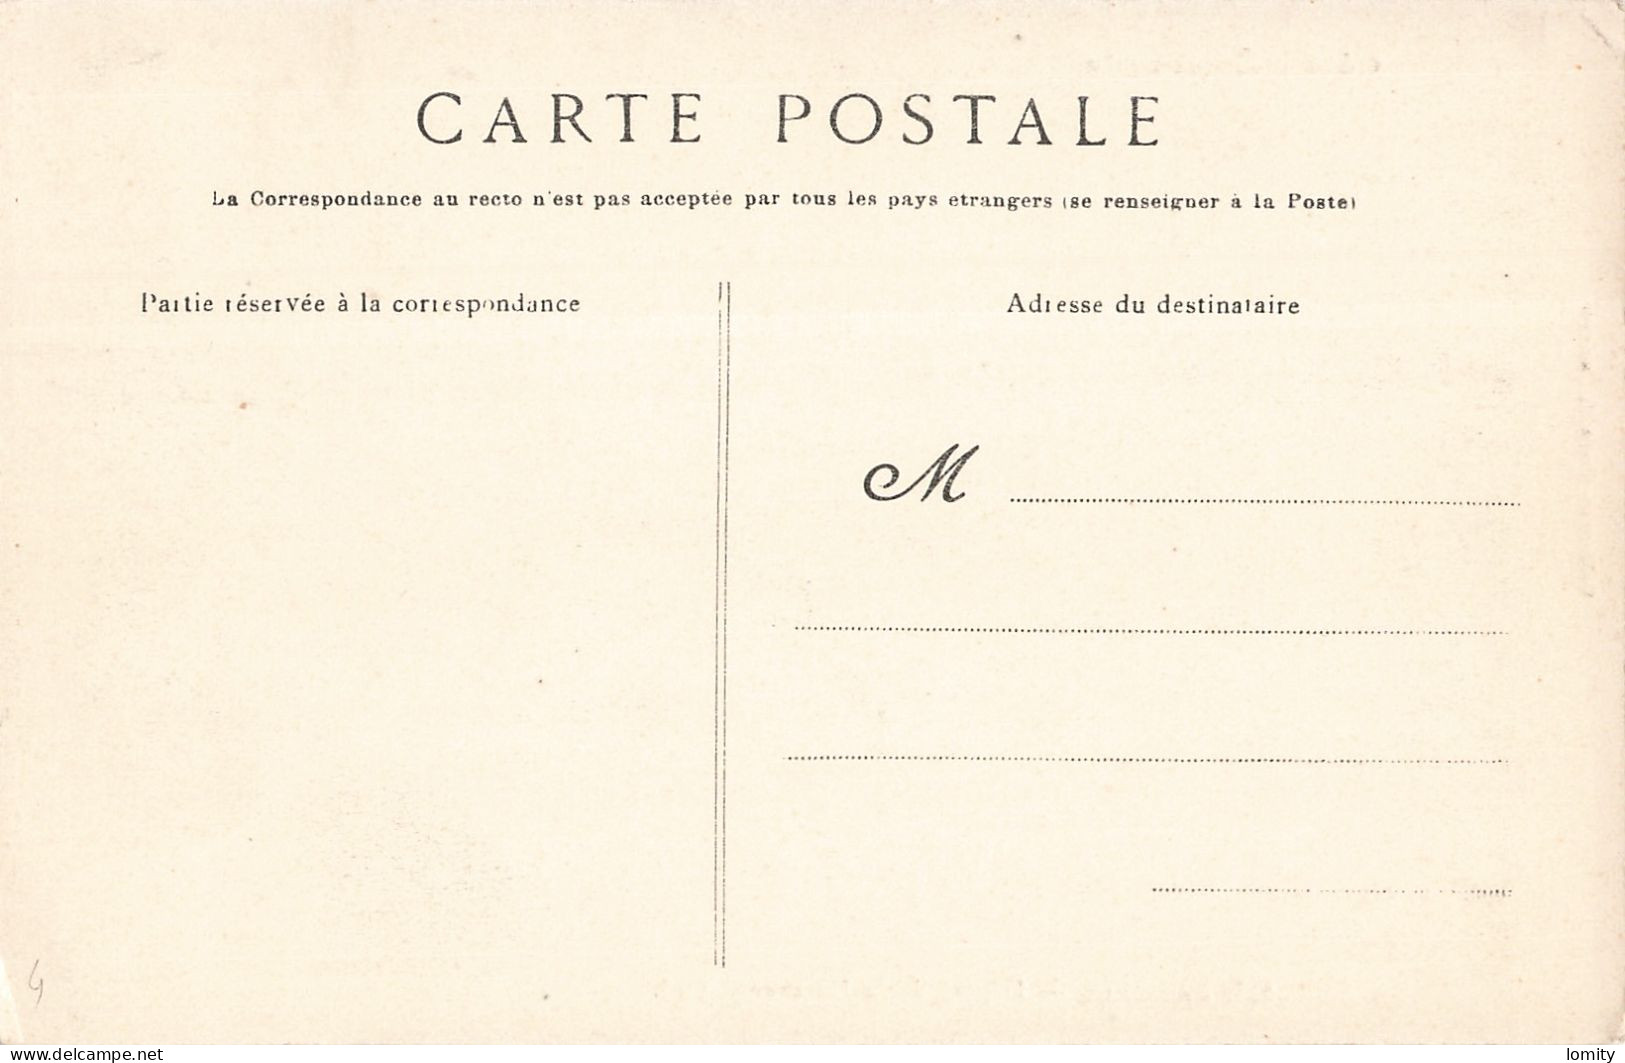 Destockage lot de 23 cartes postales CPA Ille et vilaine Saint Malo Cancale Paramé vedettes dinardaises Dinard